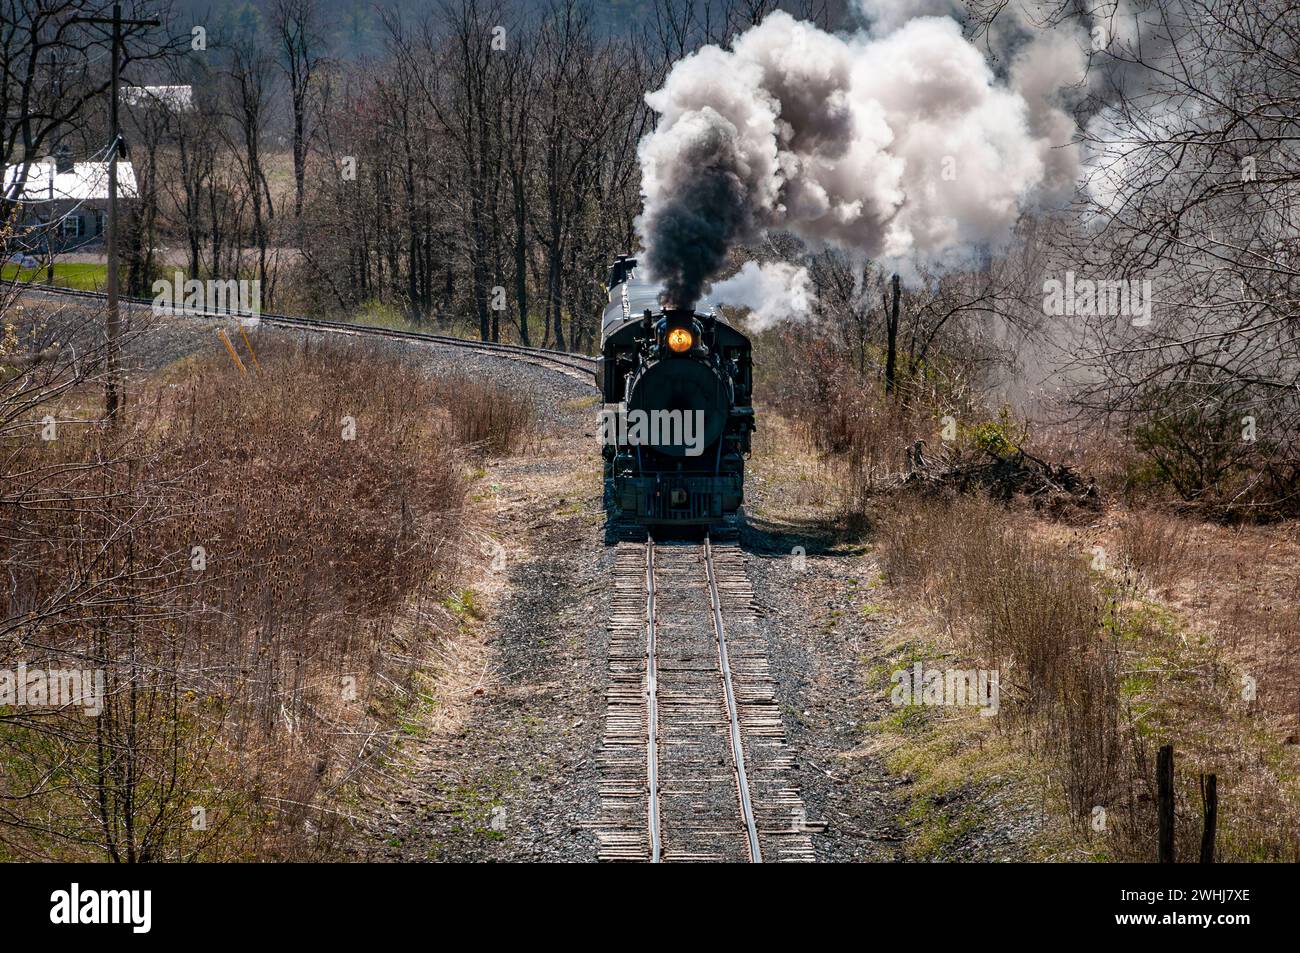 Dirigez-vous vers et au-dessus de la vue d'un train à vapeur à voie étroite restauré qui souffle de la fumée Banque D'Images